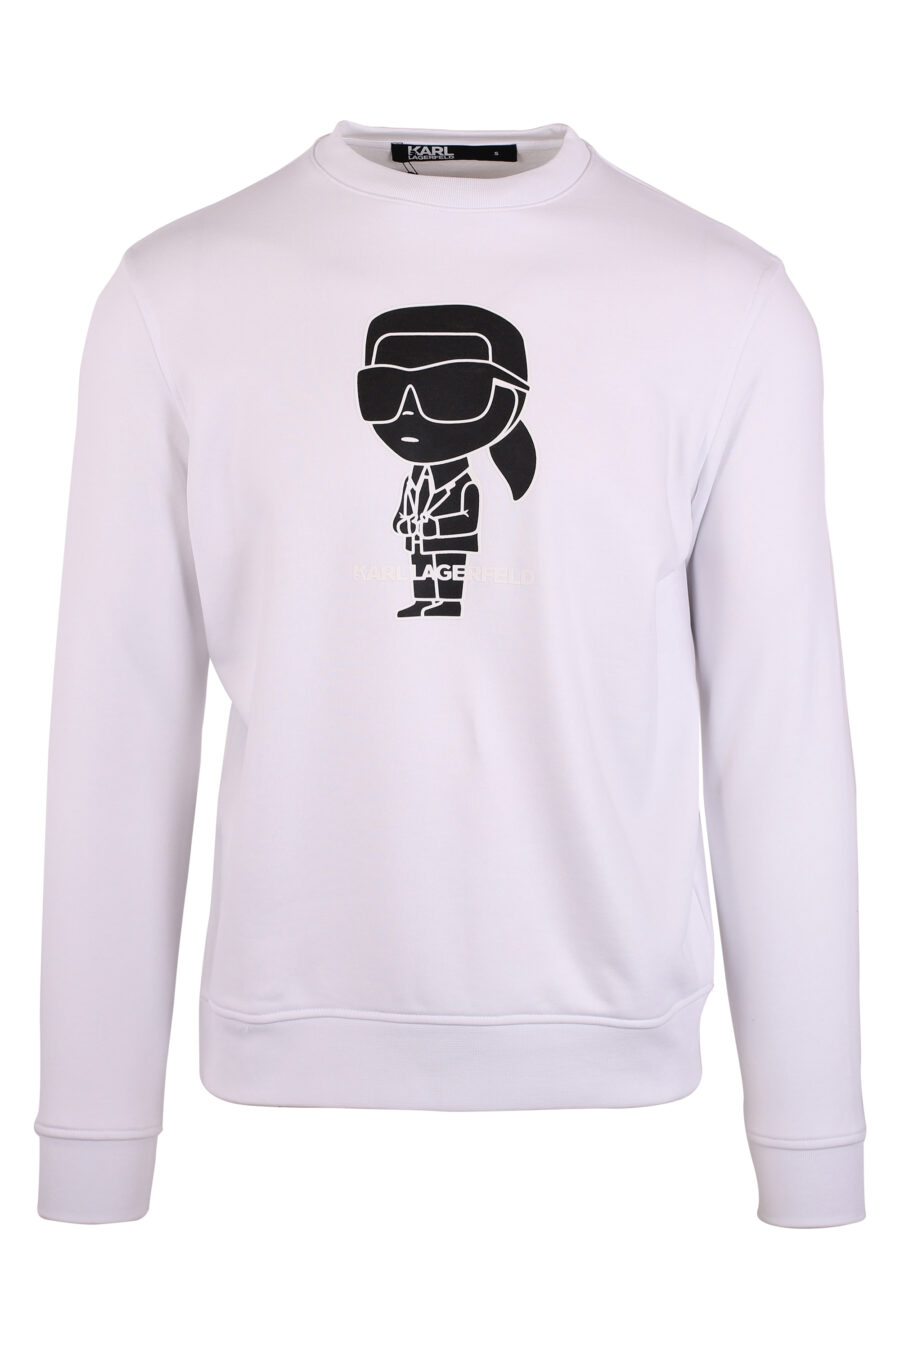 Weißes Sweatshirt mit Maxilogo "karl" in Silhouette - IMG 9476